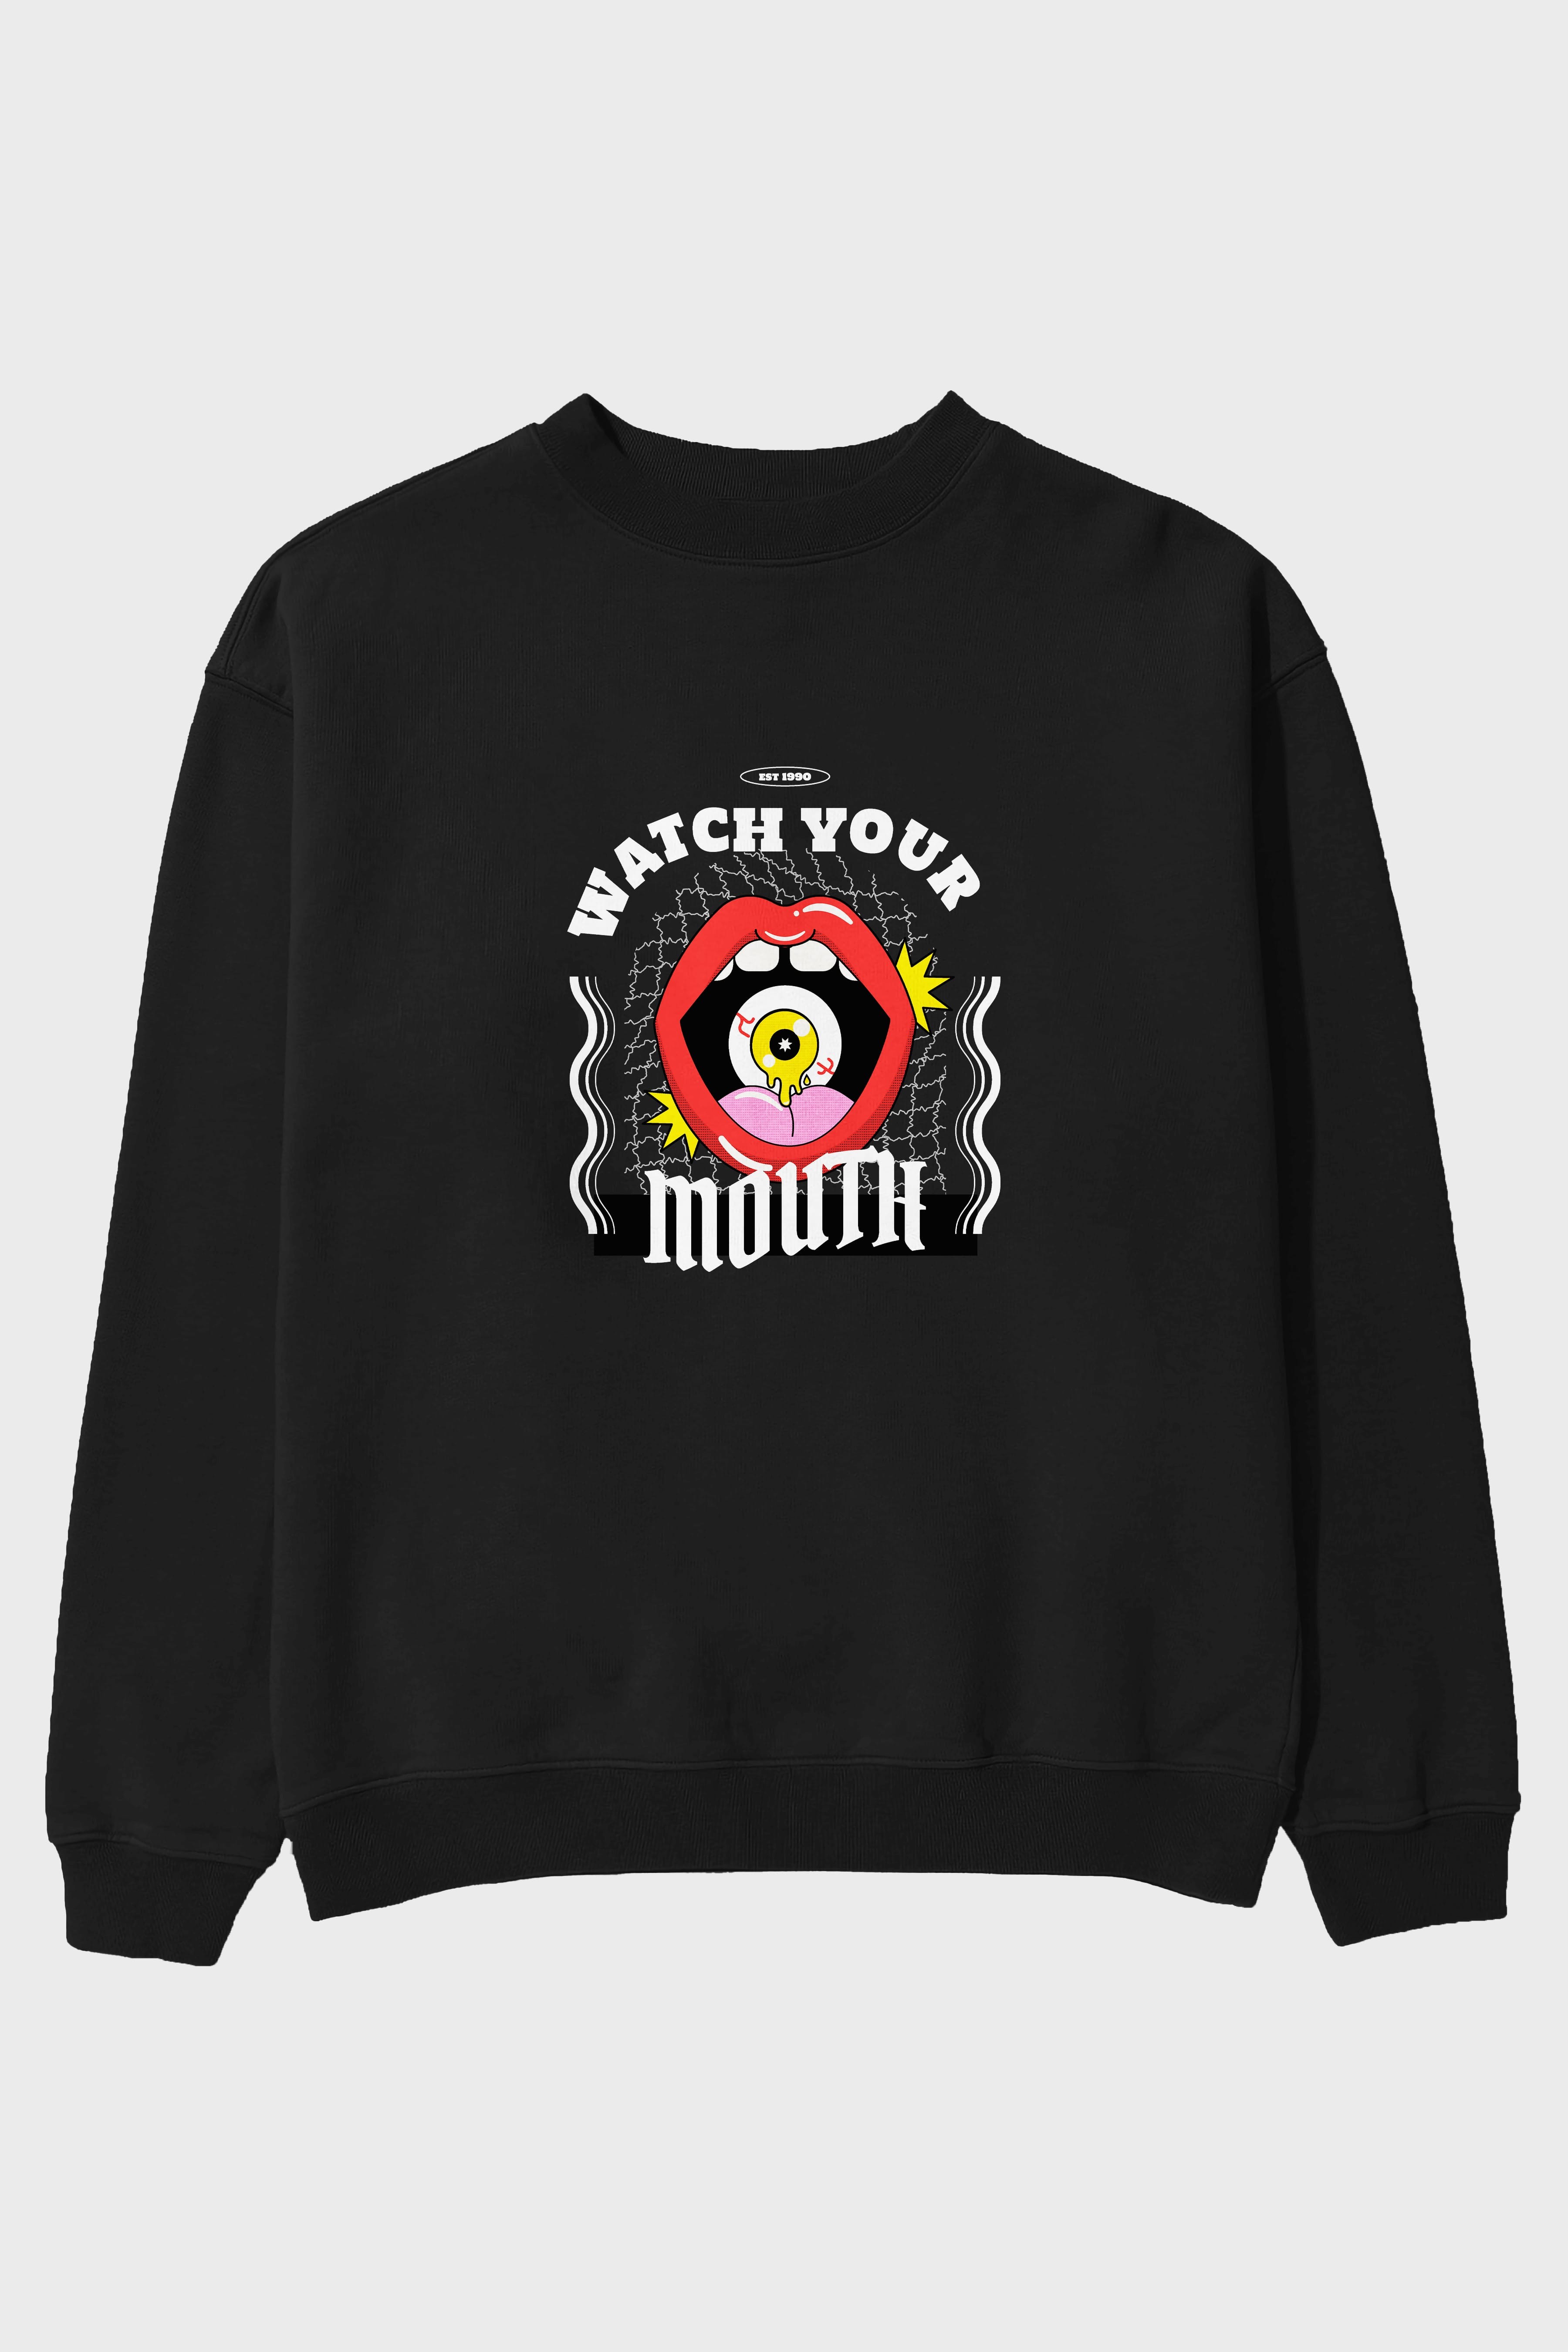 Watch Your Mouth Ön Baskılı Oversize Sweatshirt Erkek Kadın Unisex